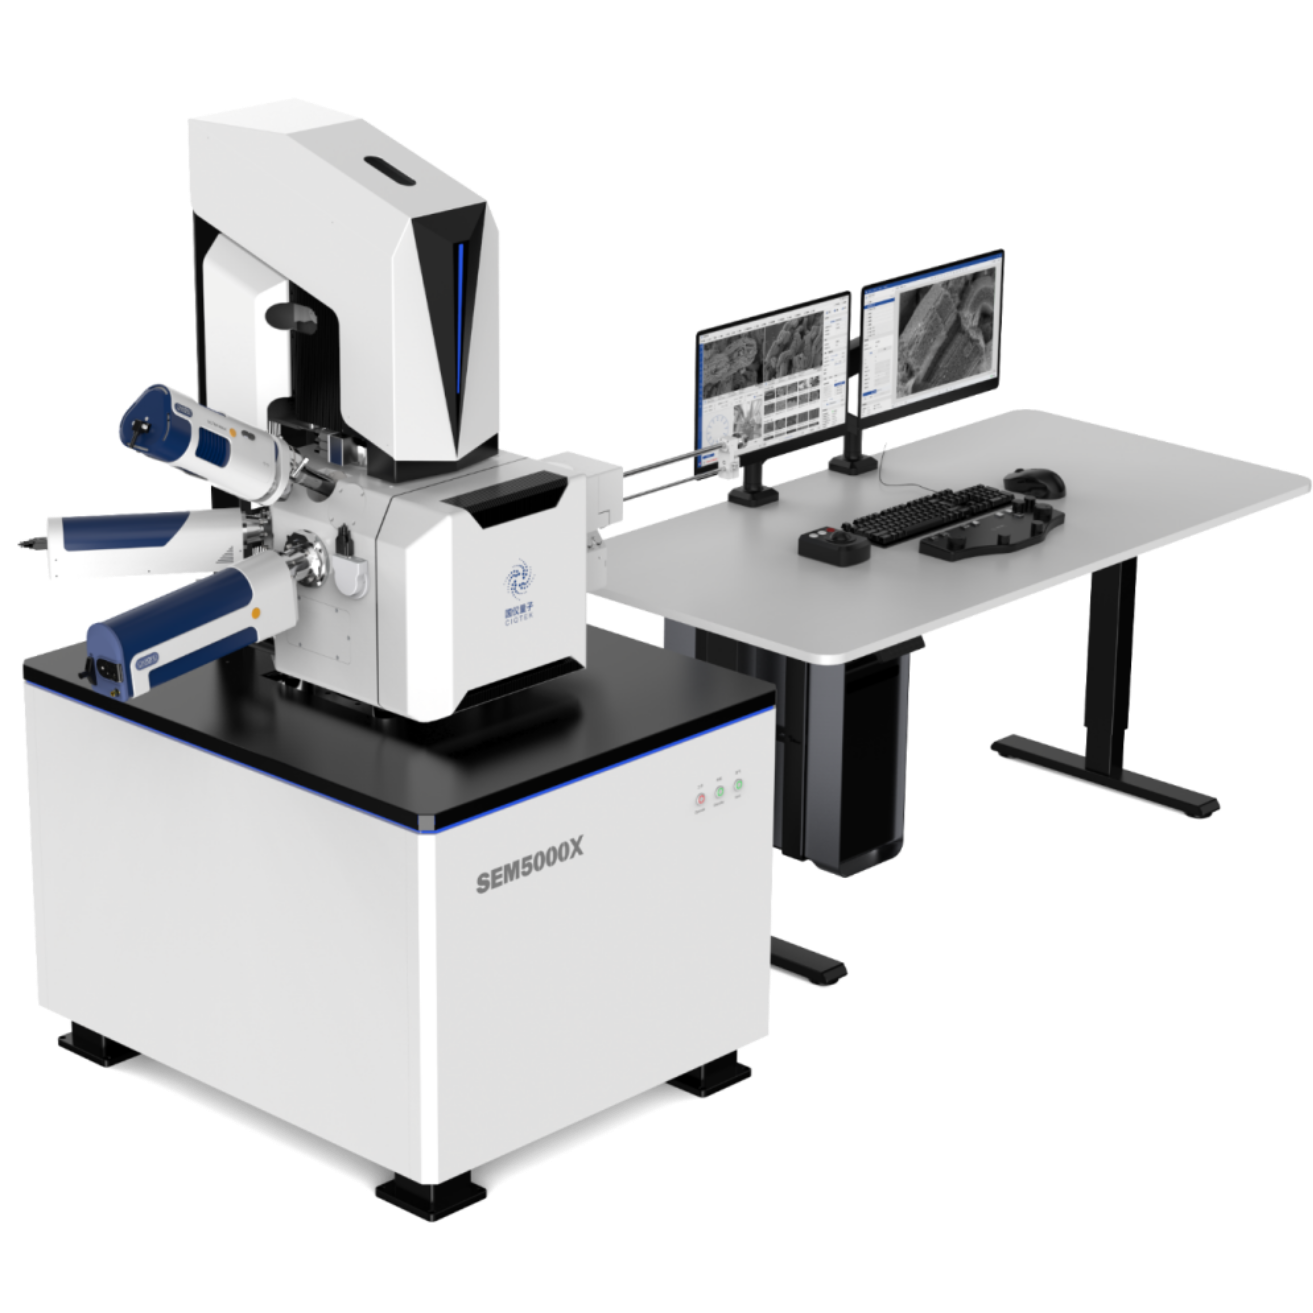 国仪量子超高分辨场发射扫描电子显微镜SEM5000X